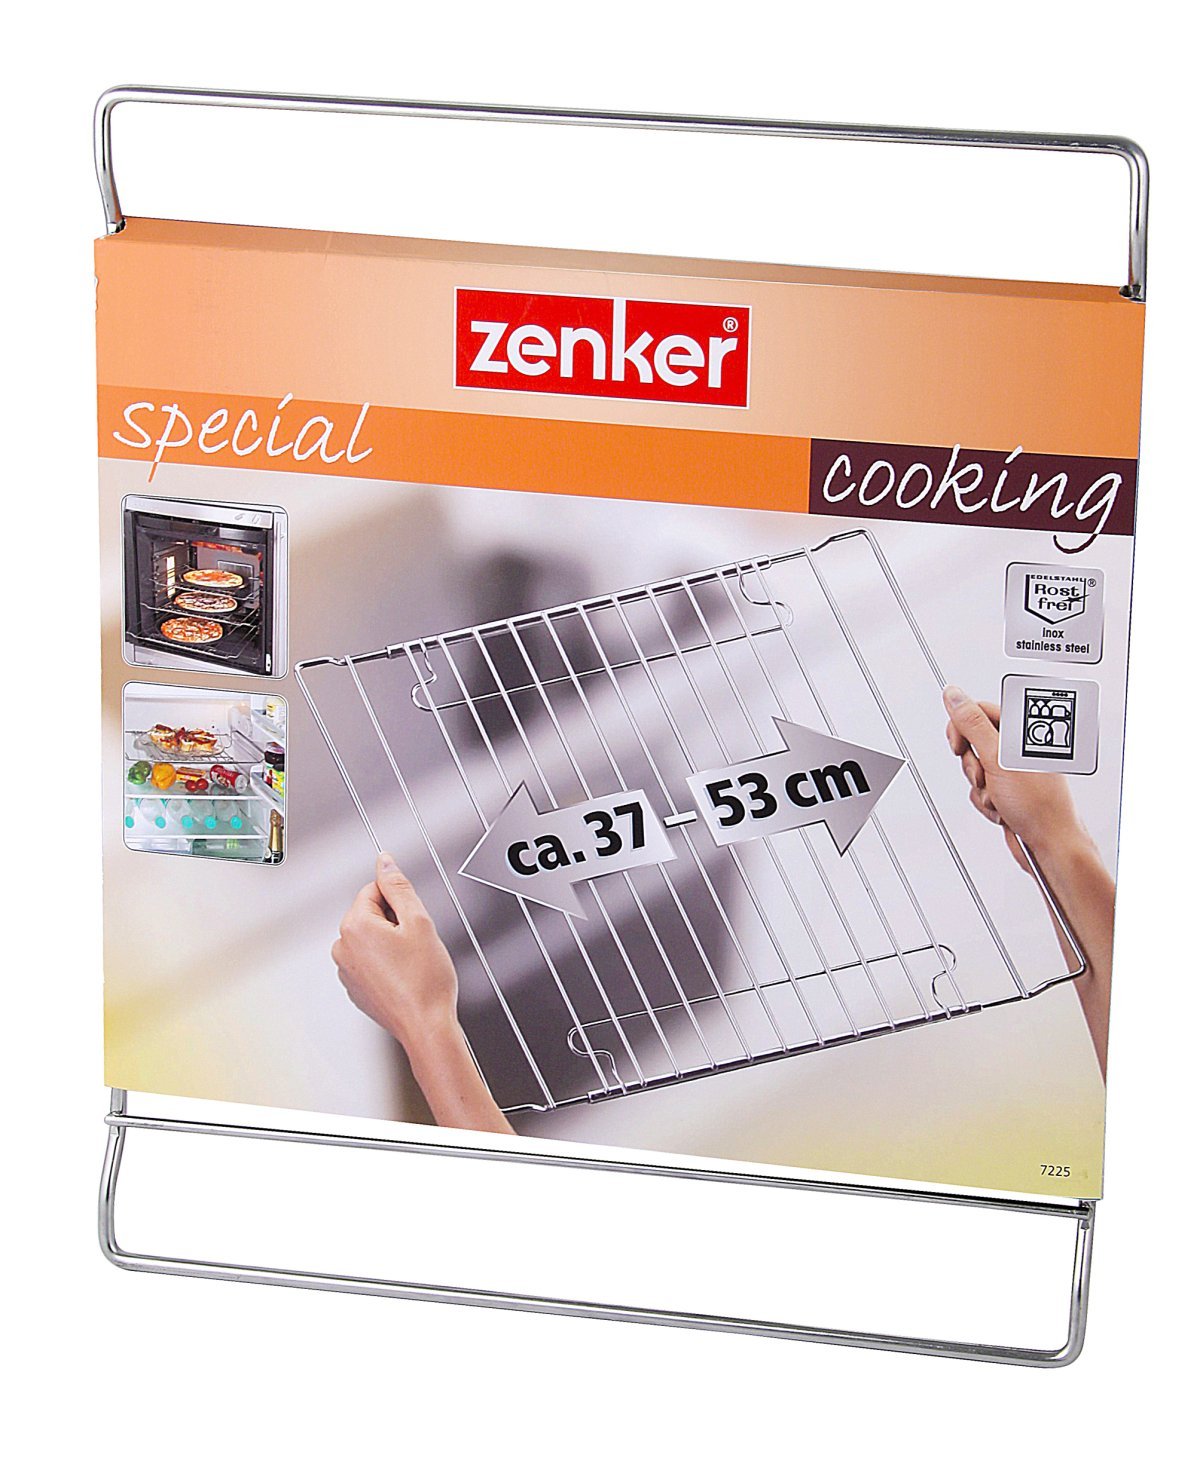 Zenker "Special - Cooking" Baking rack, Stainless Steel